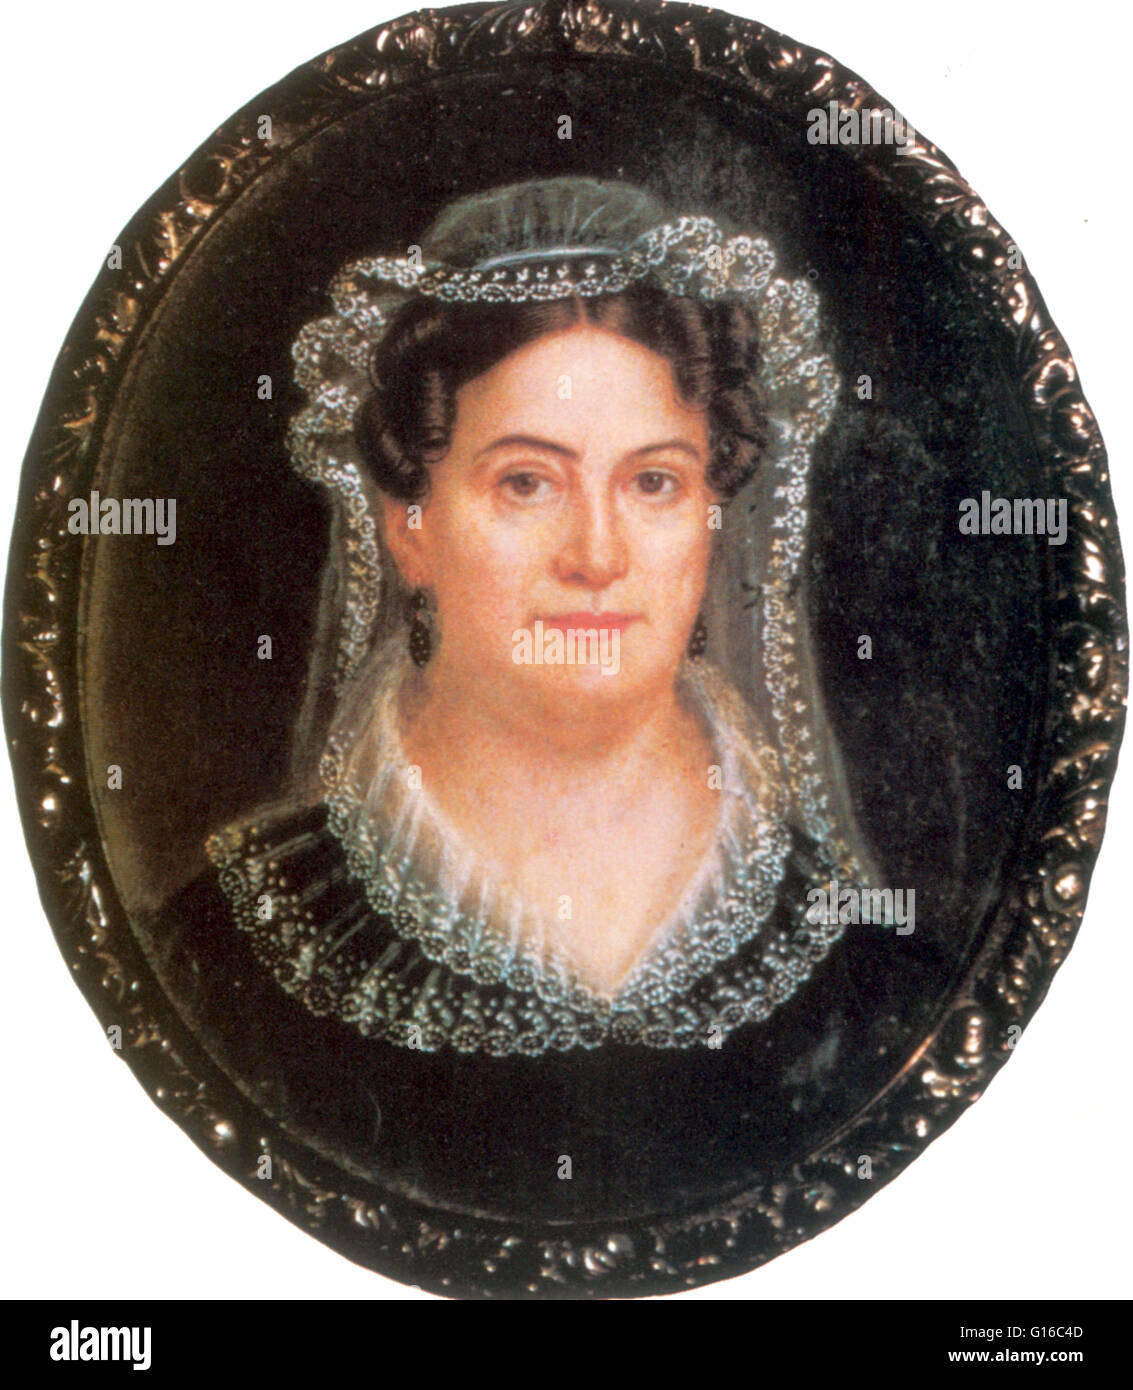 Rachel Donelson Robards Jackson (15. Juni 1767 - 22. Dezember 1828) war die Ehefrau von Andrew Jackson, der 7. Präsident der Vereinigten Staaten. Sie lebte mit ihm in ihrem Haus in The Hermitage, aber starb vor seinem Amtsantritt im Jahr 1829, und daher war neve Stockfoto